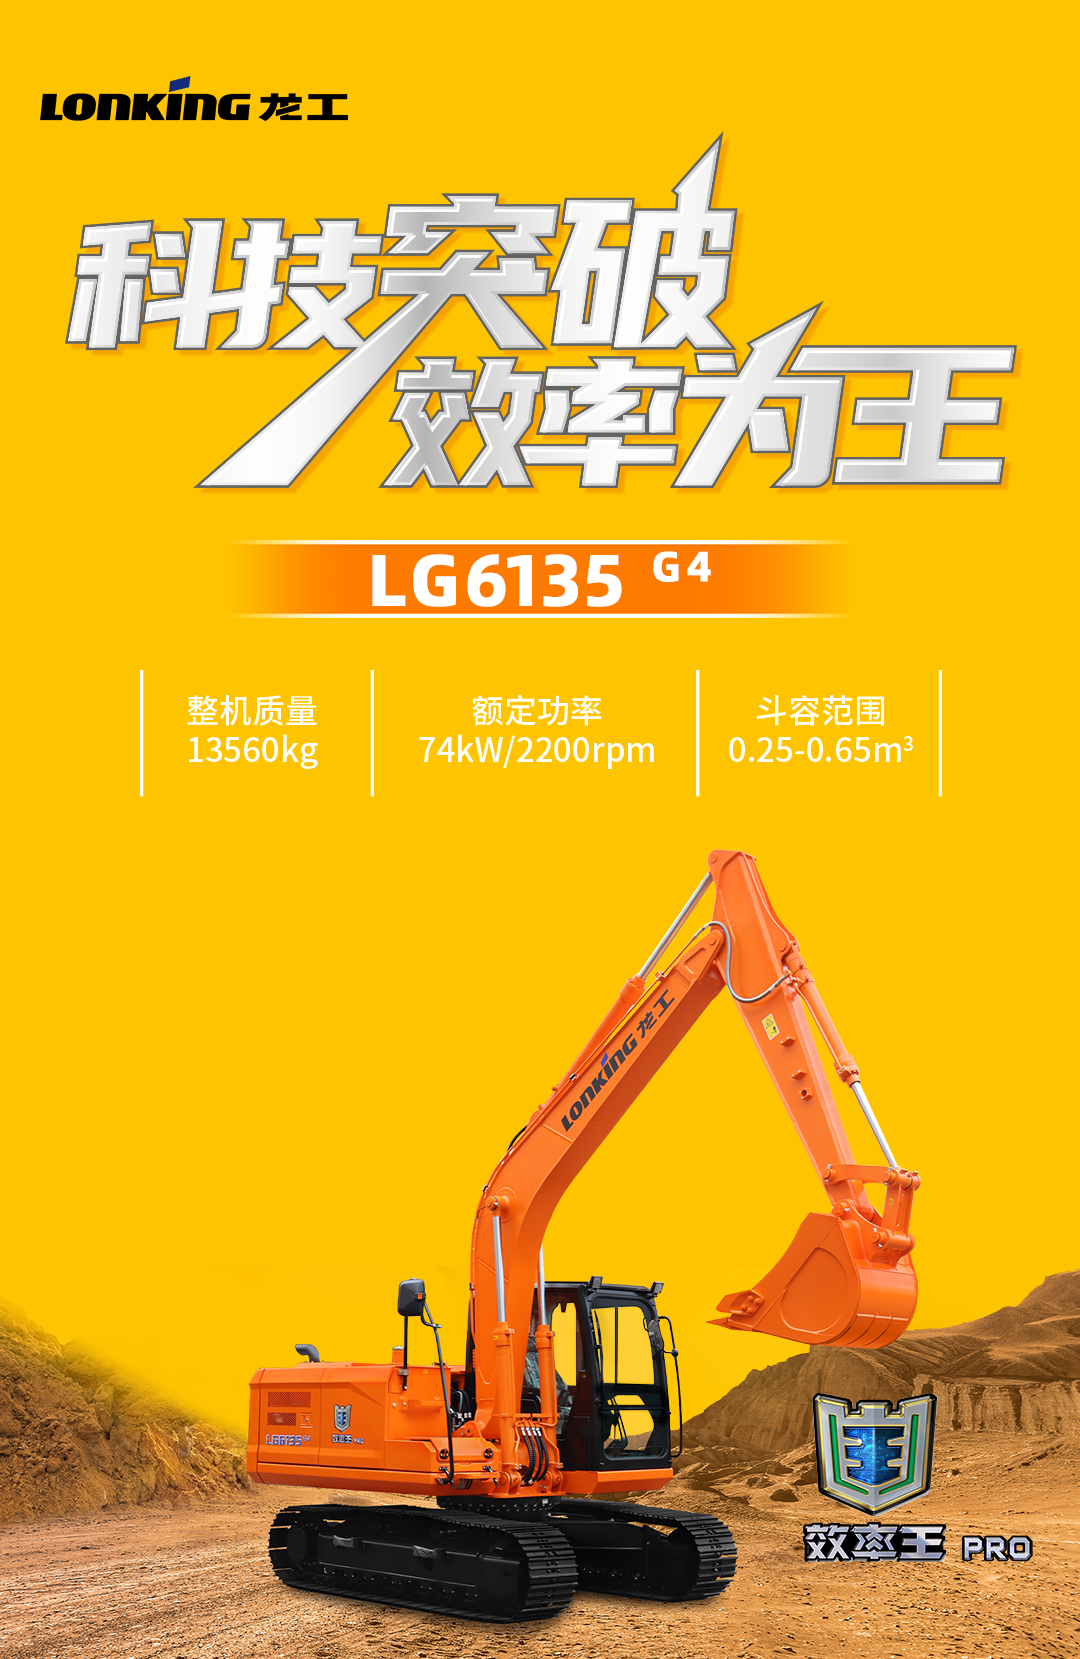 龙工LG6135 G4——土方小霸王，无惧考验，省油又省心